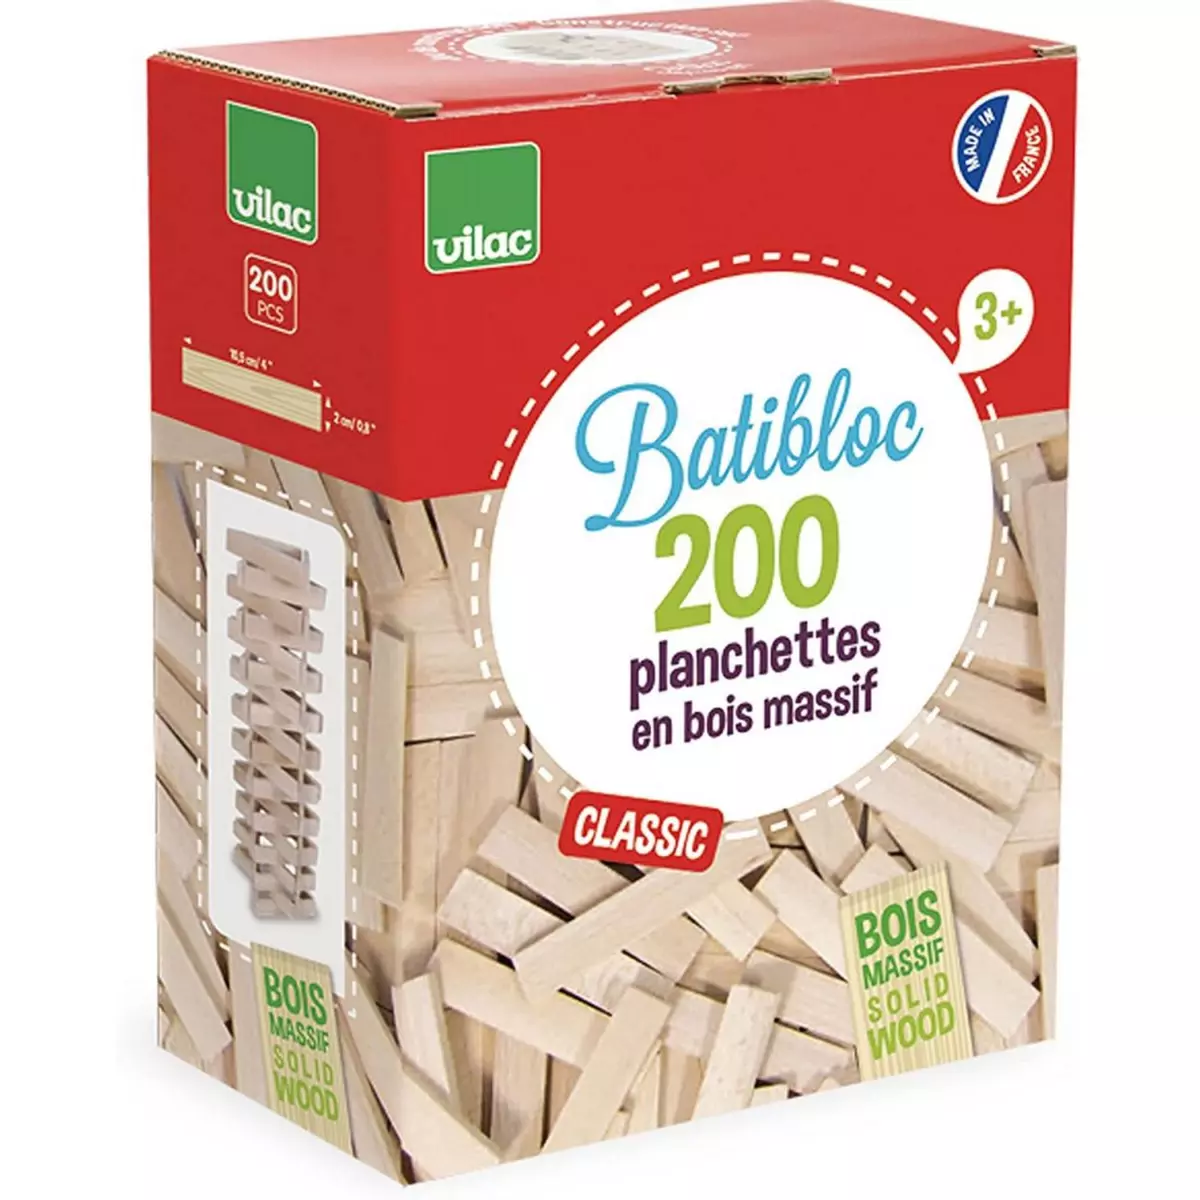 Vilac Batibloc classic 200 planchettes en bois